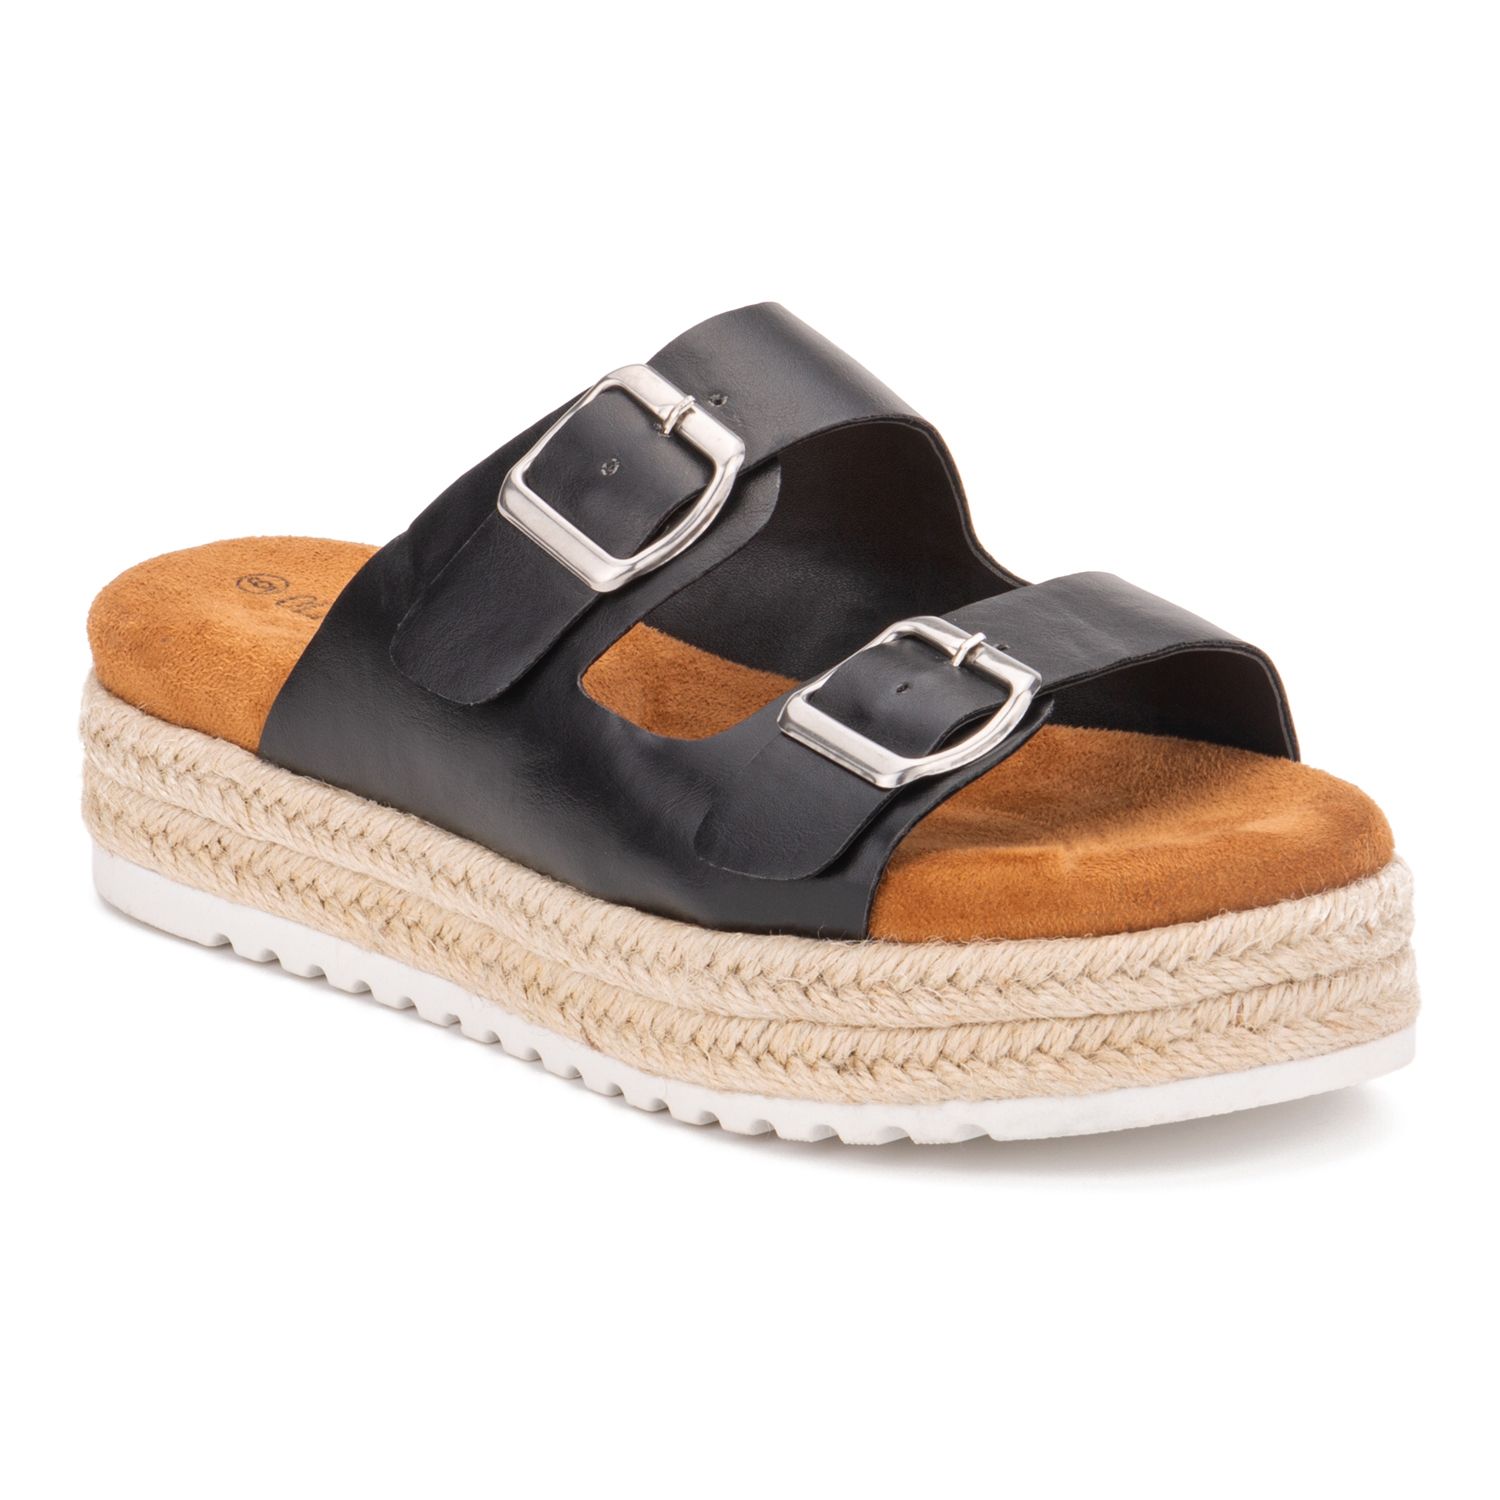 refresh platform sandals